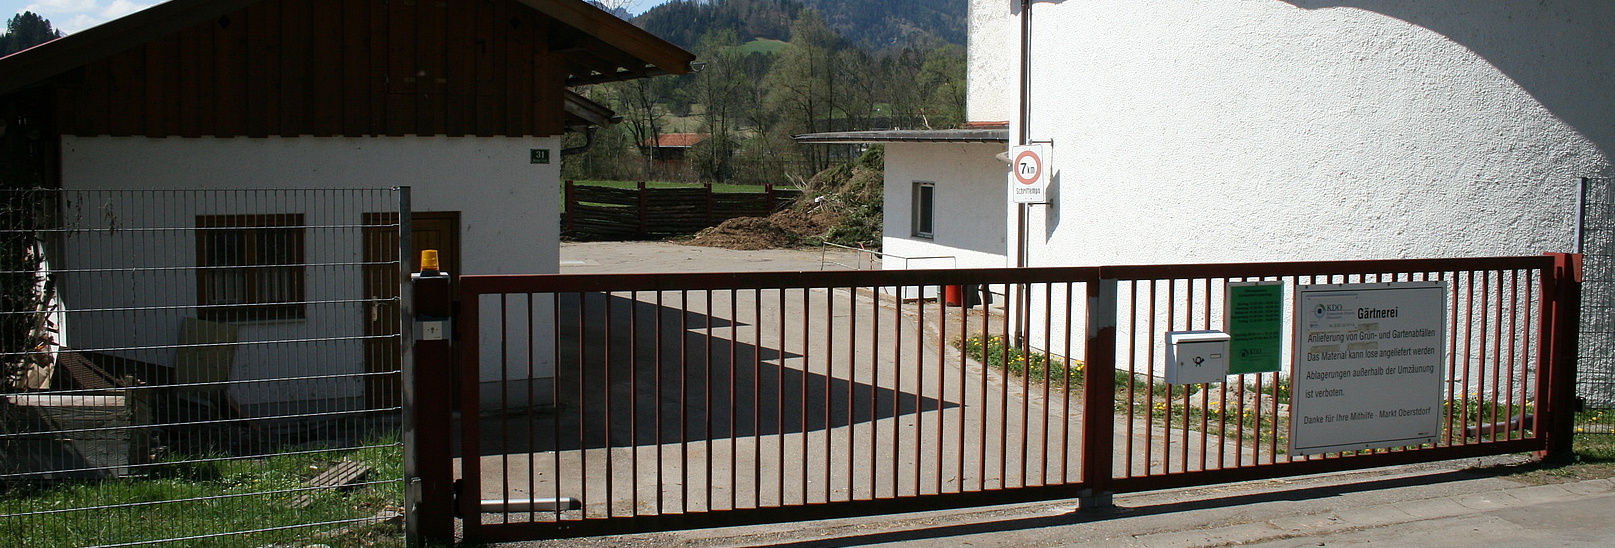 Einfahrt zur Grüngutannahmestelle in Oberstdorf